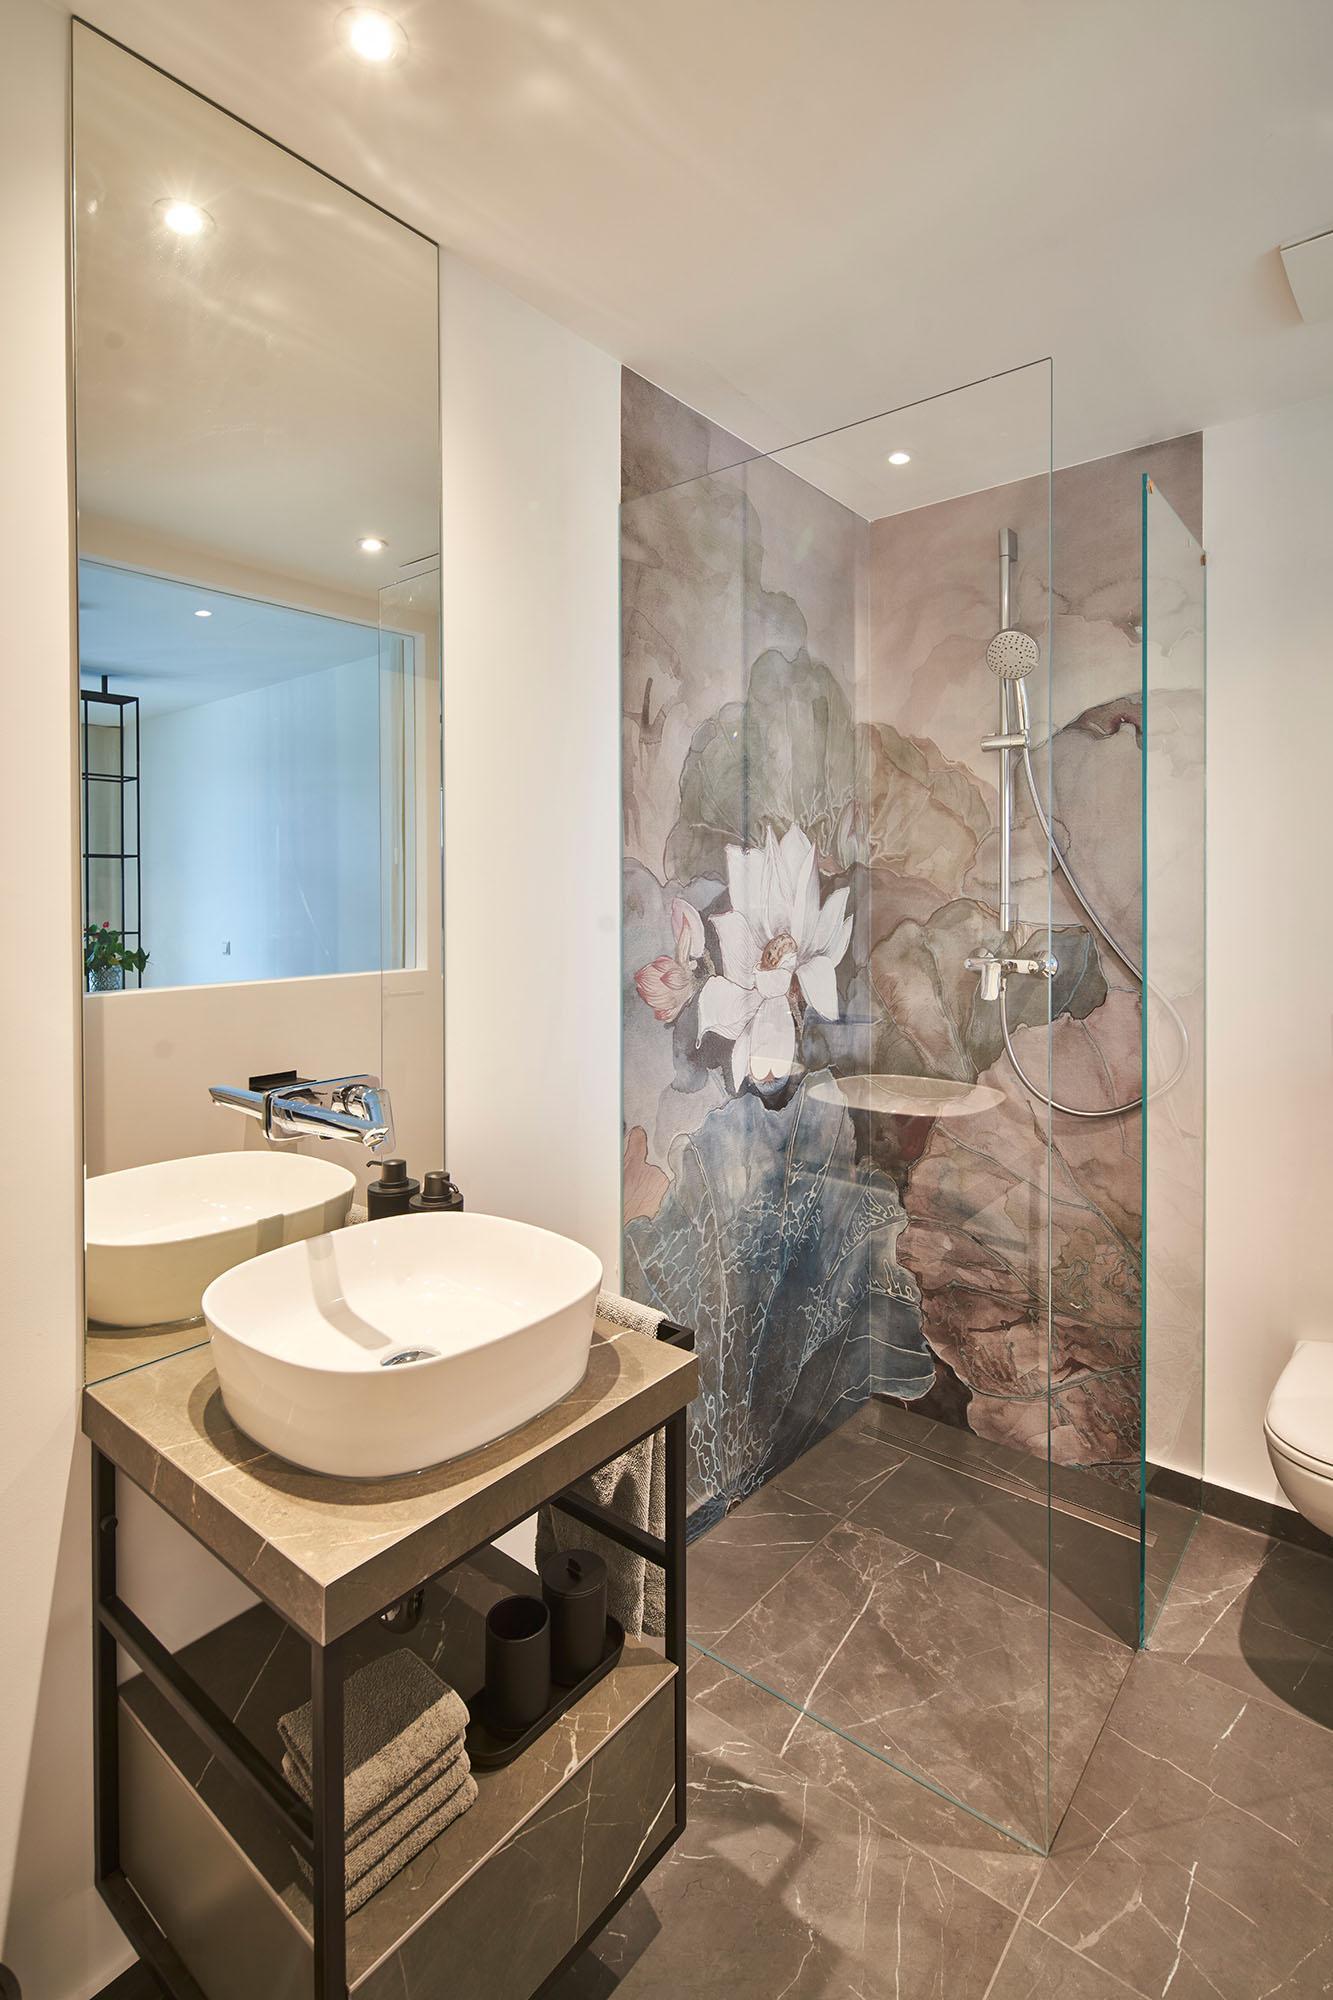 Stilvoll eingerichtetes, modernes Badezimmer in einem Hotel - Luxuriöses Interior Design für entspannende Aufenthalte - GROSSMANN INTERIORS